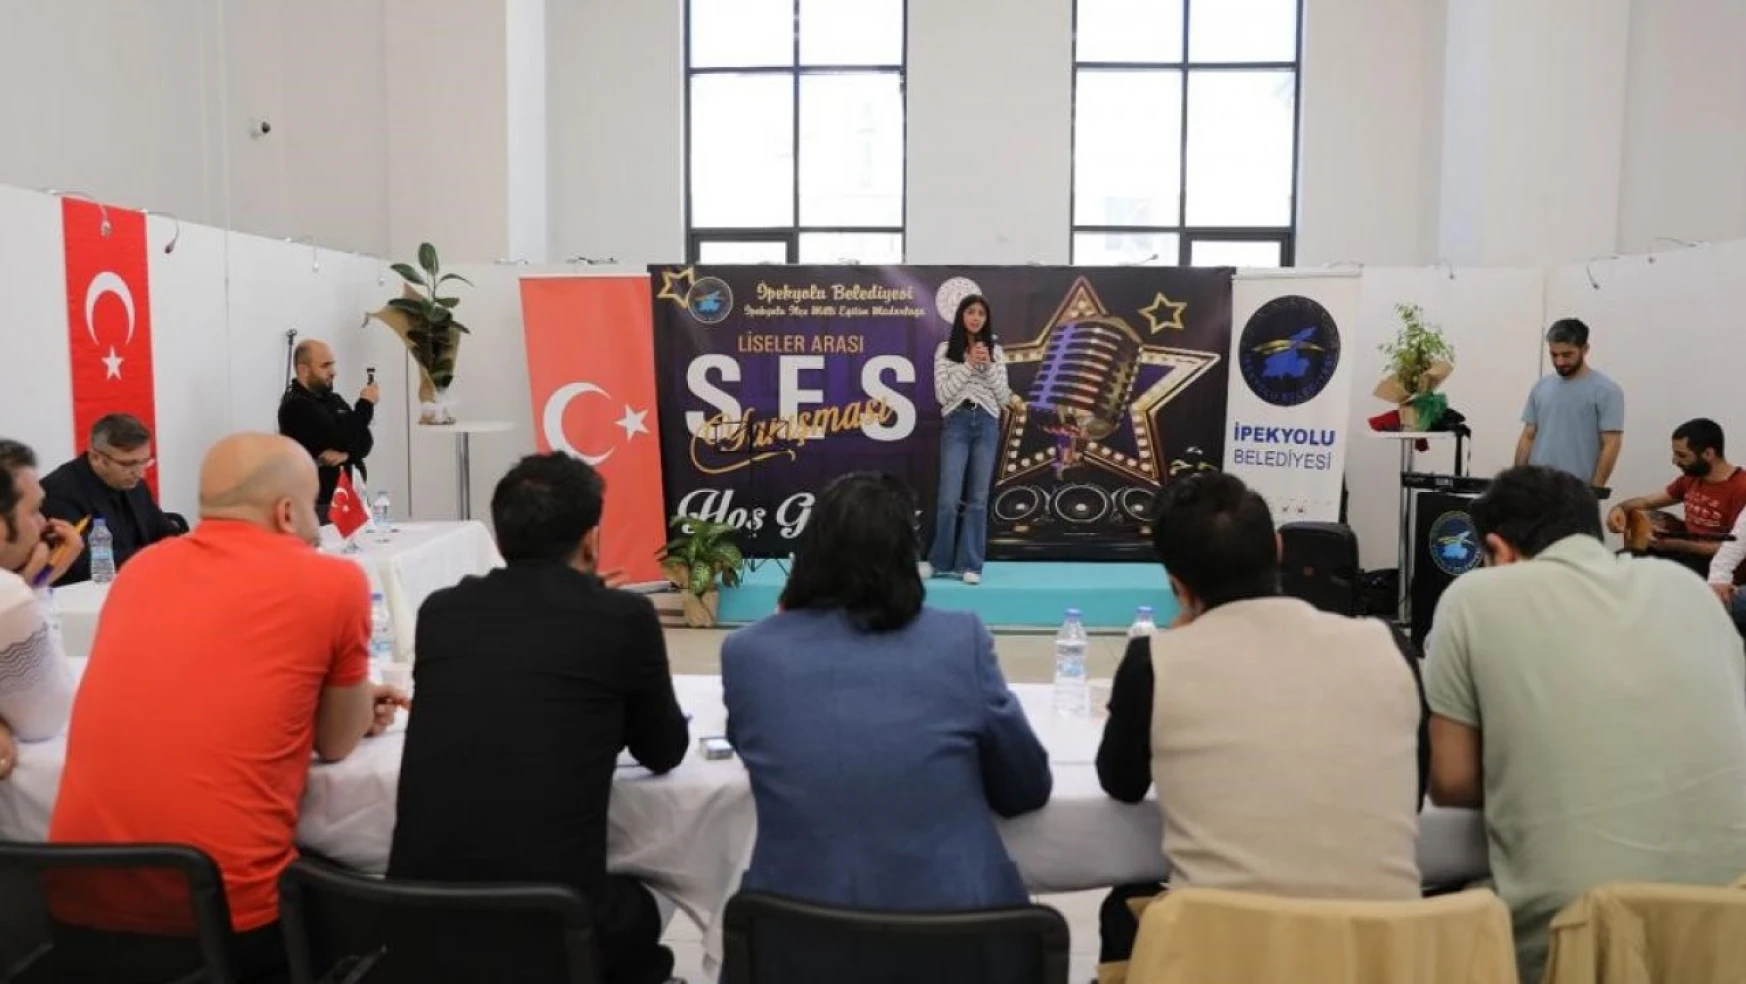 İpekyolu'nda 'Liseler Arası Ses Yarışması' başladı